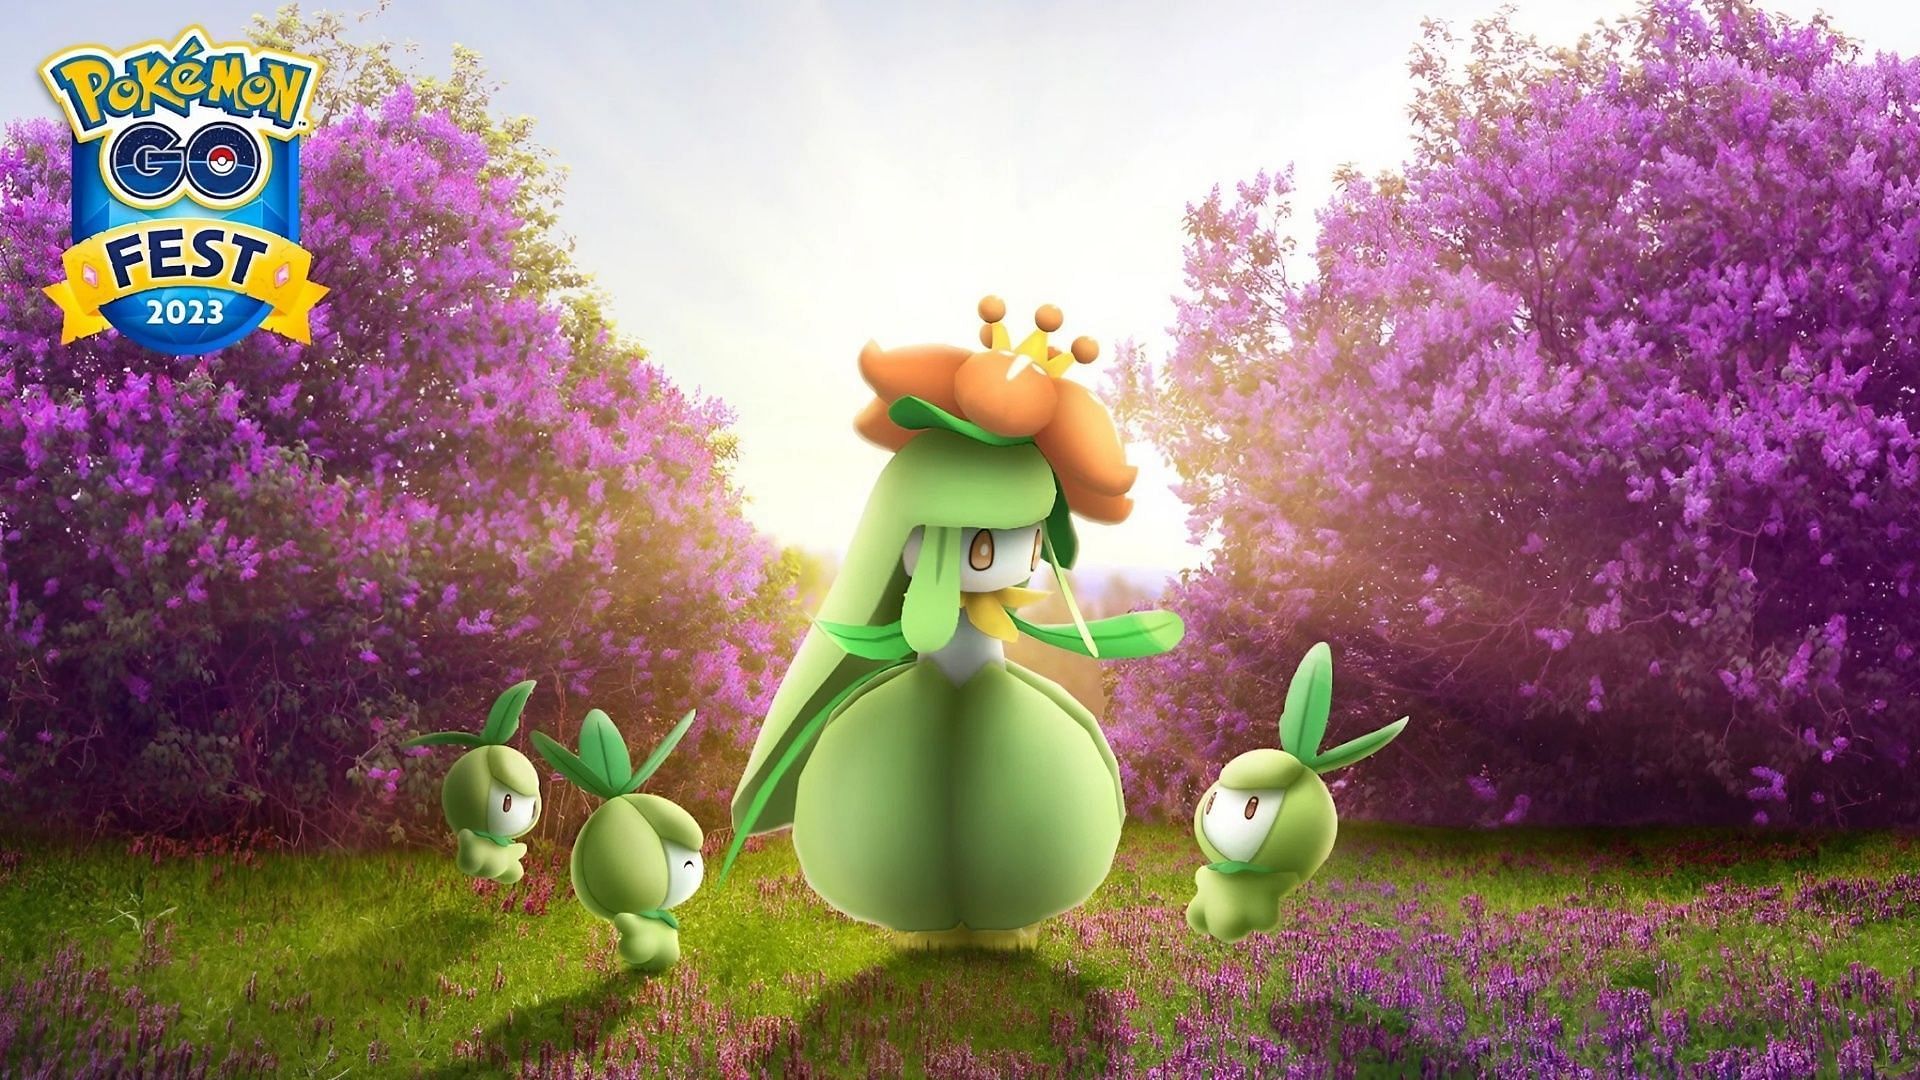 Pokemon GO Glittering Garden announced, featuring 'mons from GO Fest 2023